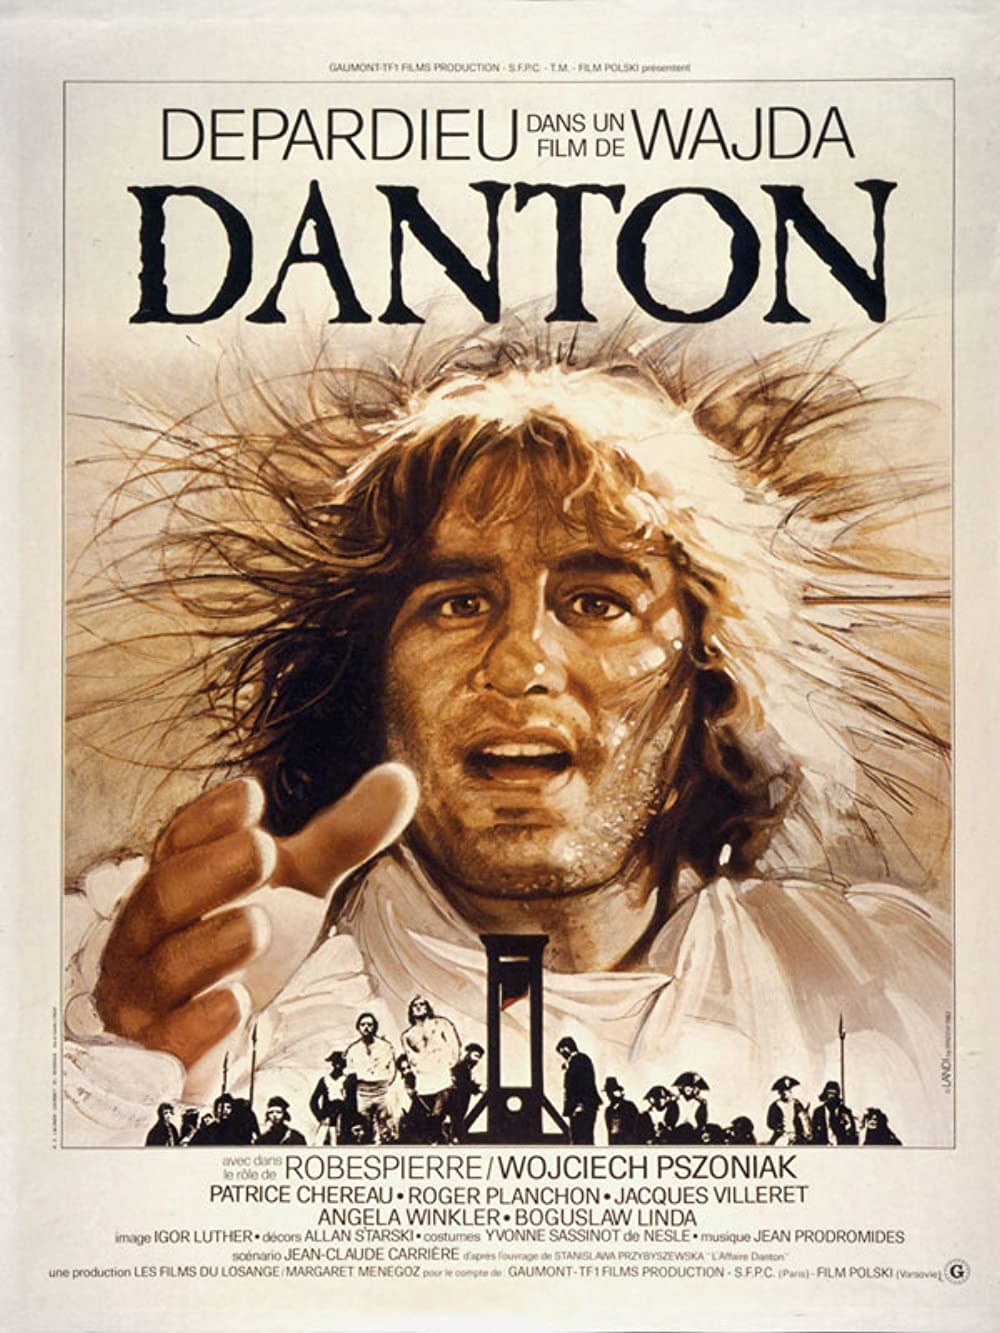 Filmbeschreibung zu Danton (OV)